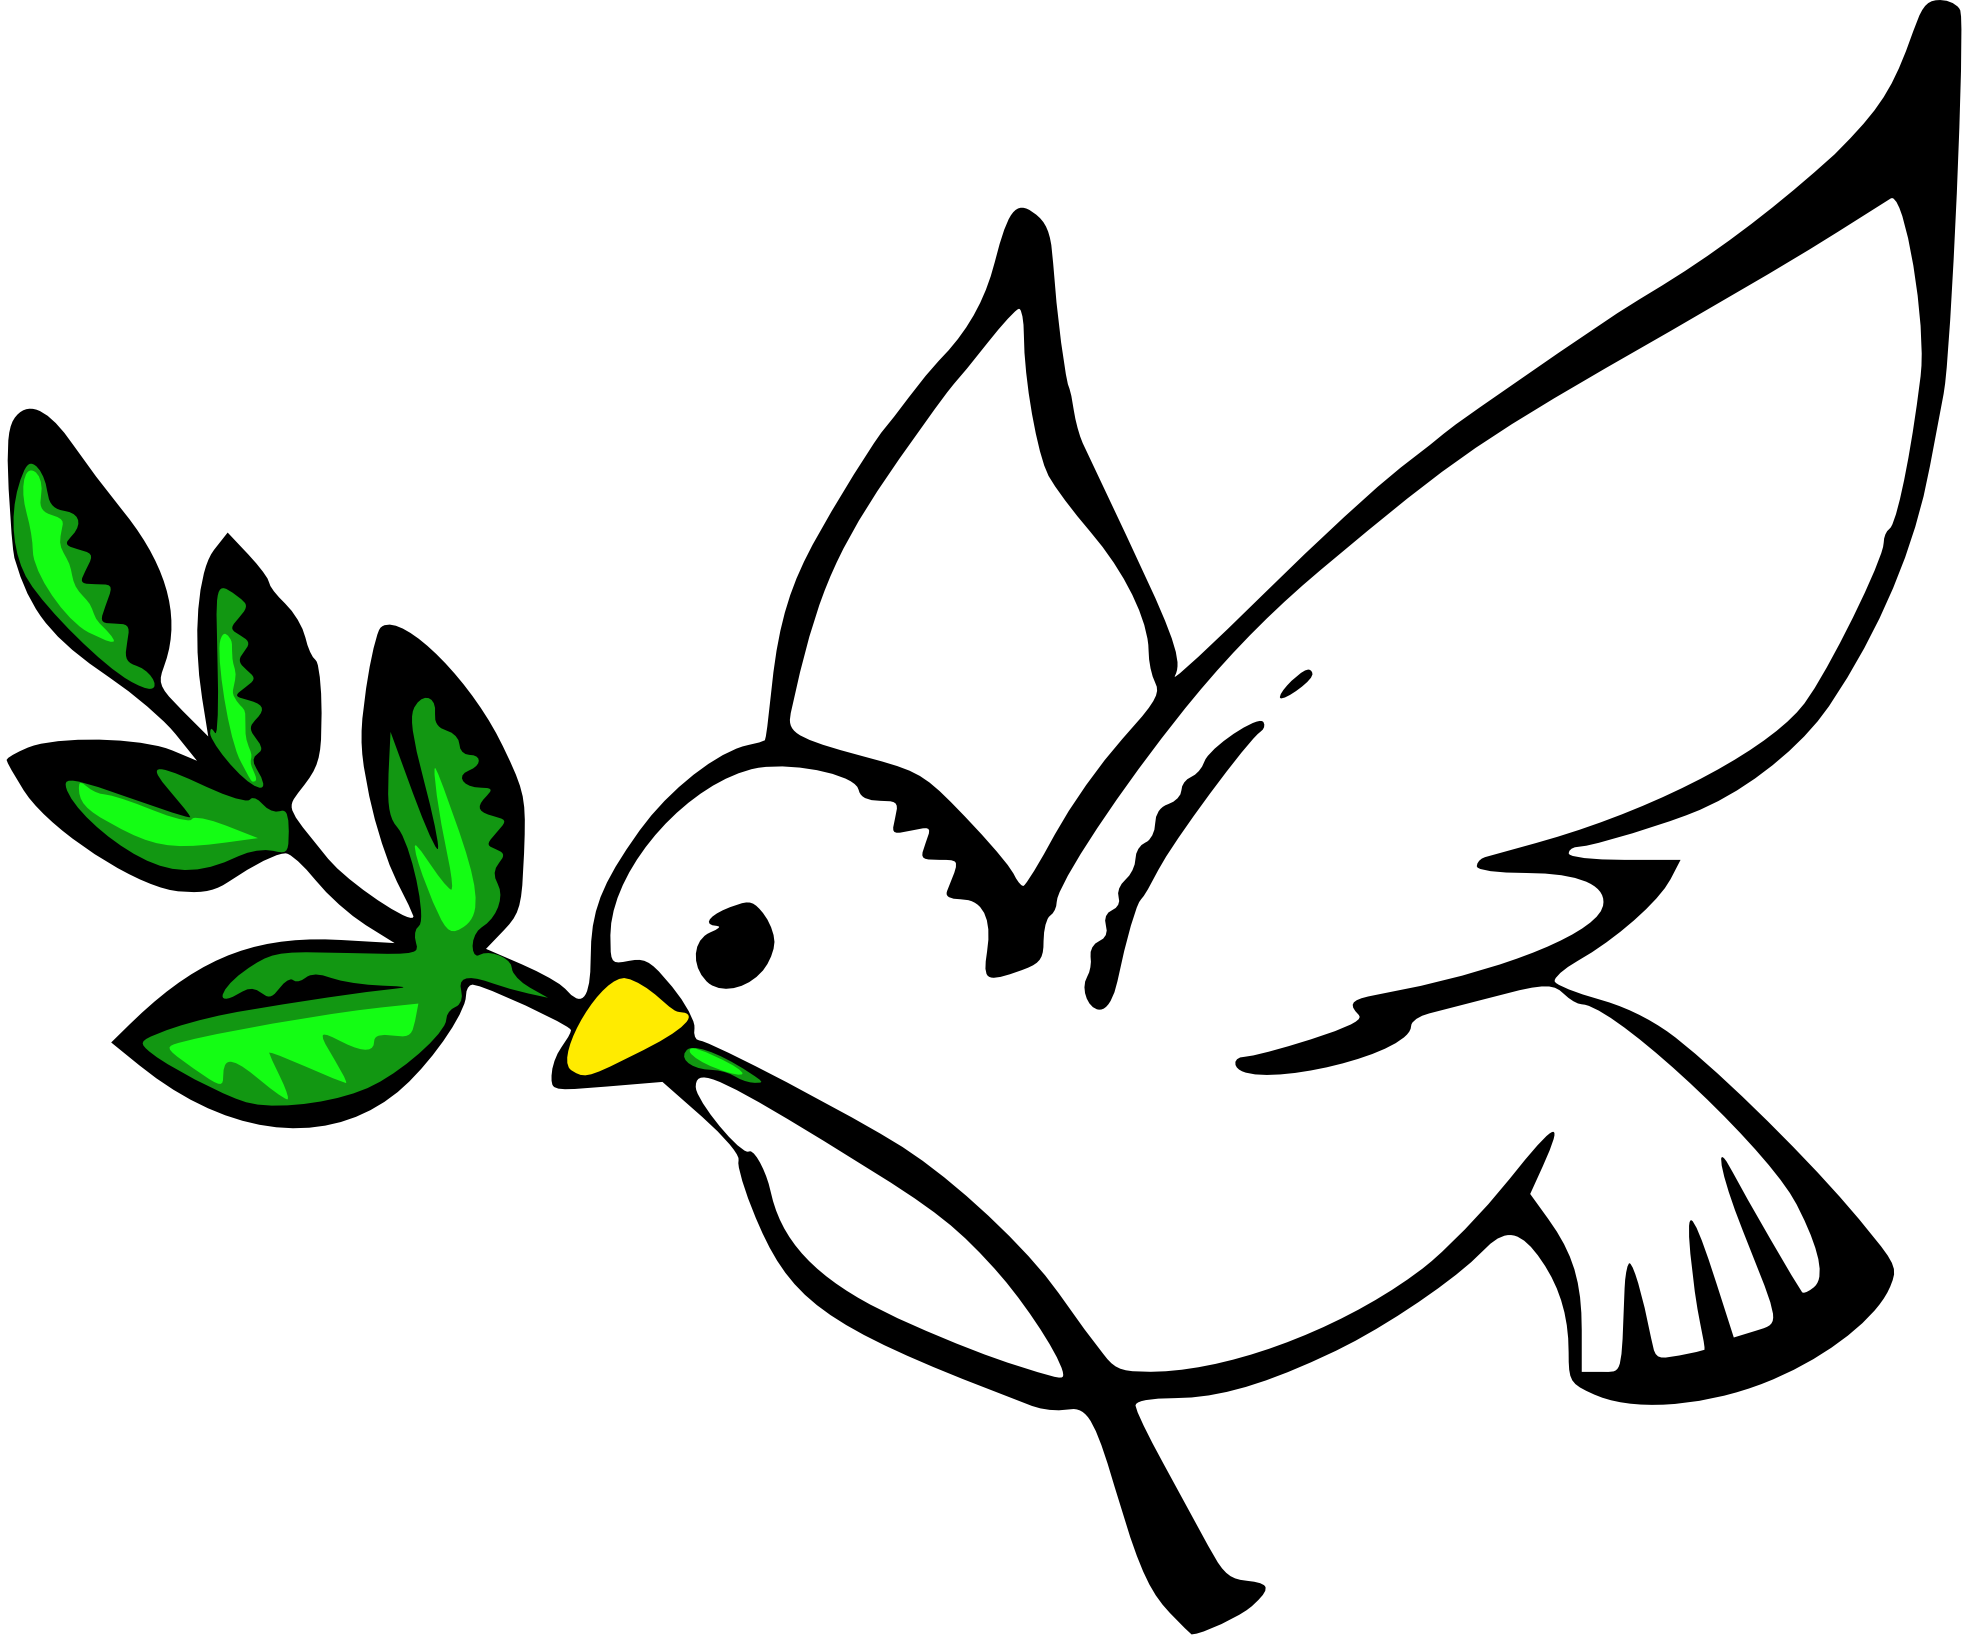 green dove clipart - photo #20